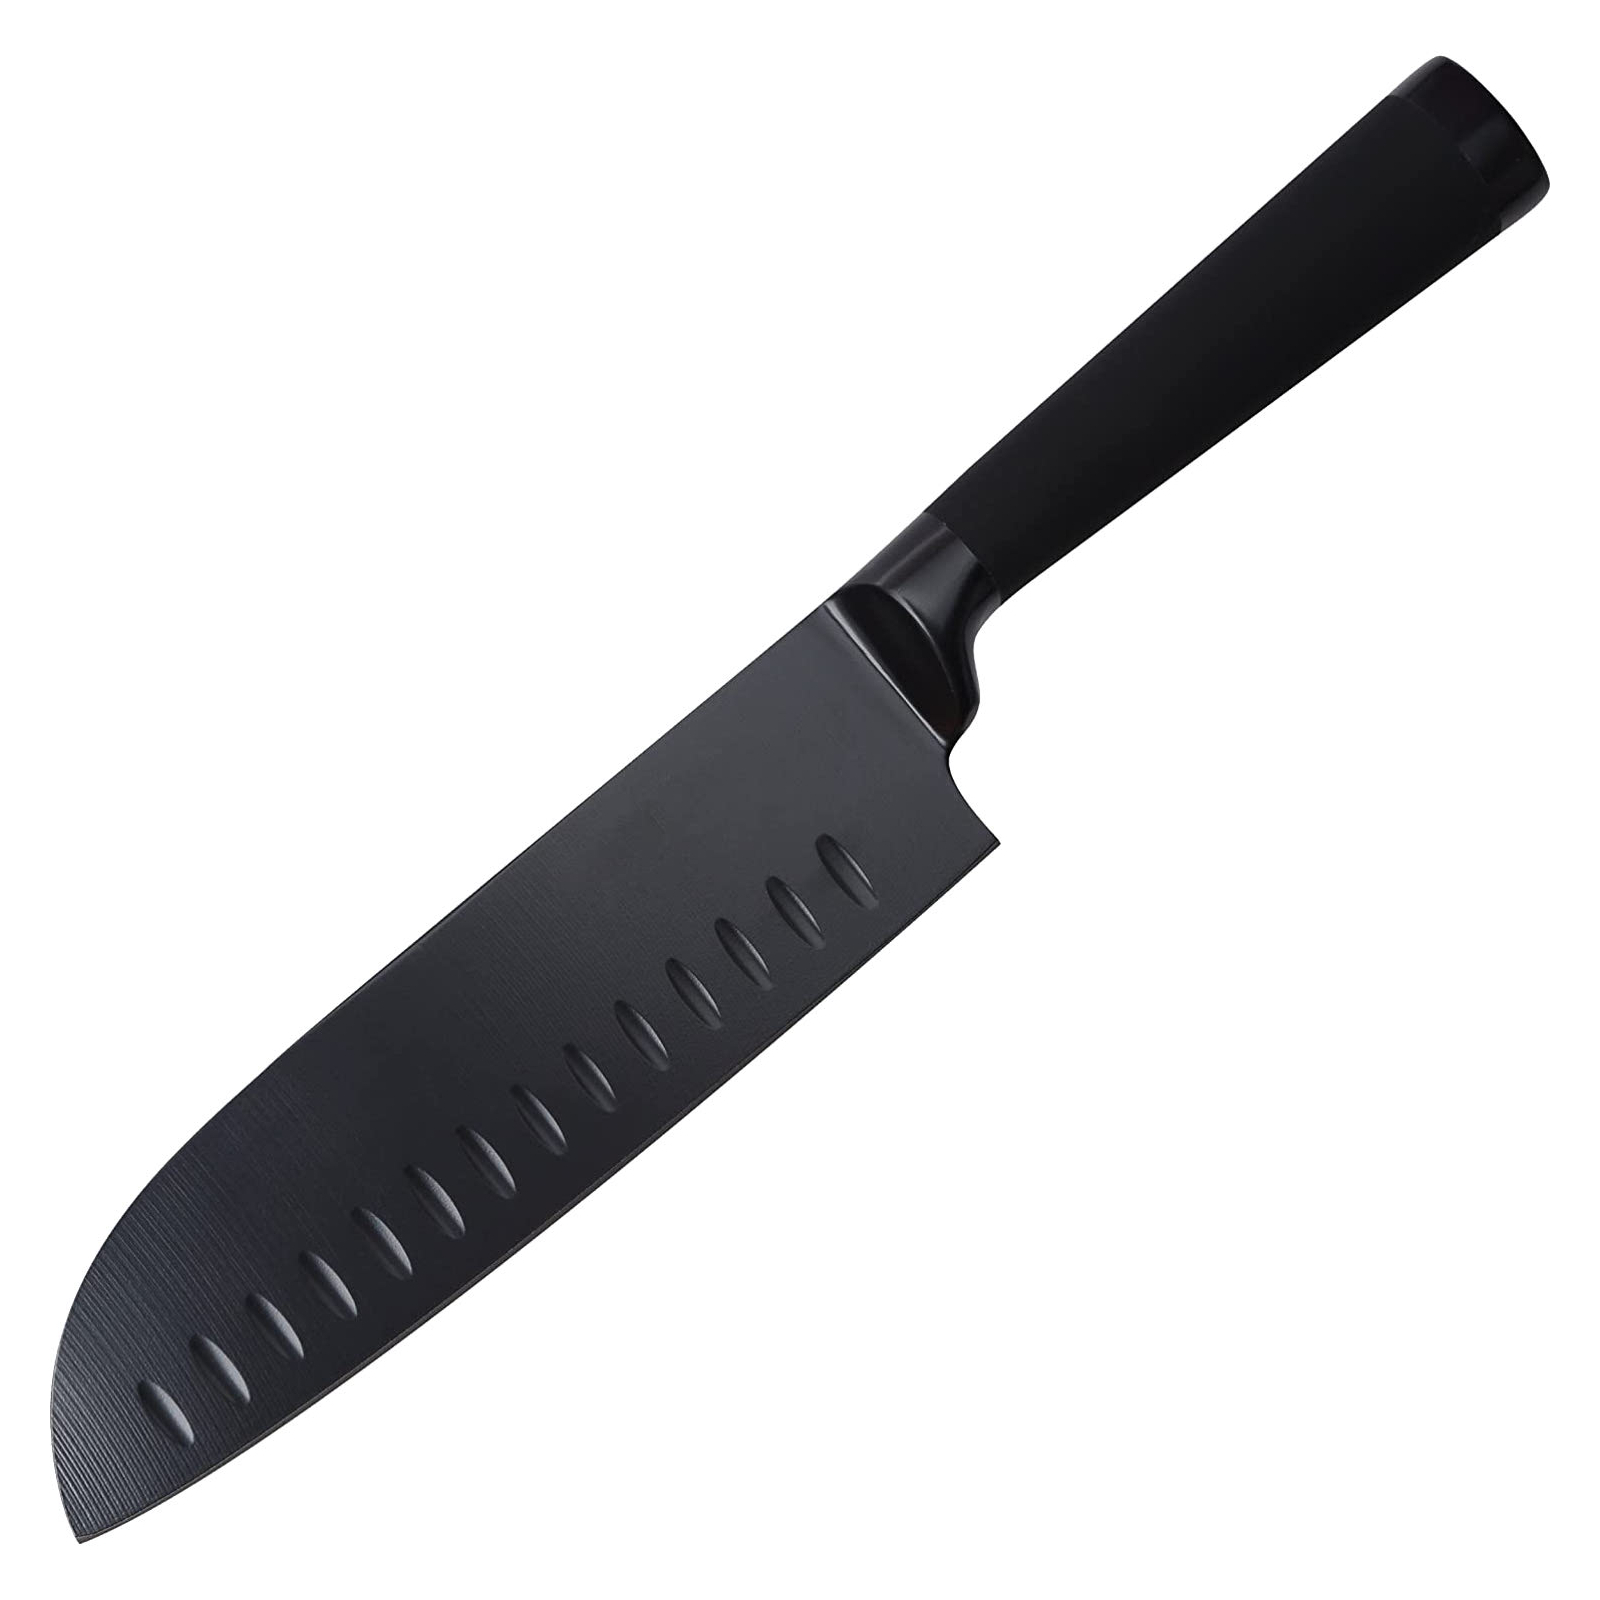 Кухонный нож Bergner Black Blade Сантоку 17,5 см (BG-8776)